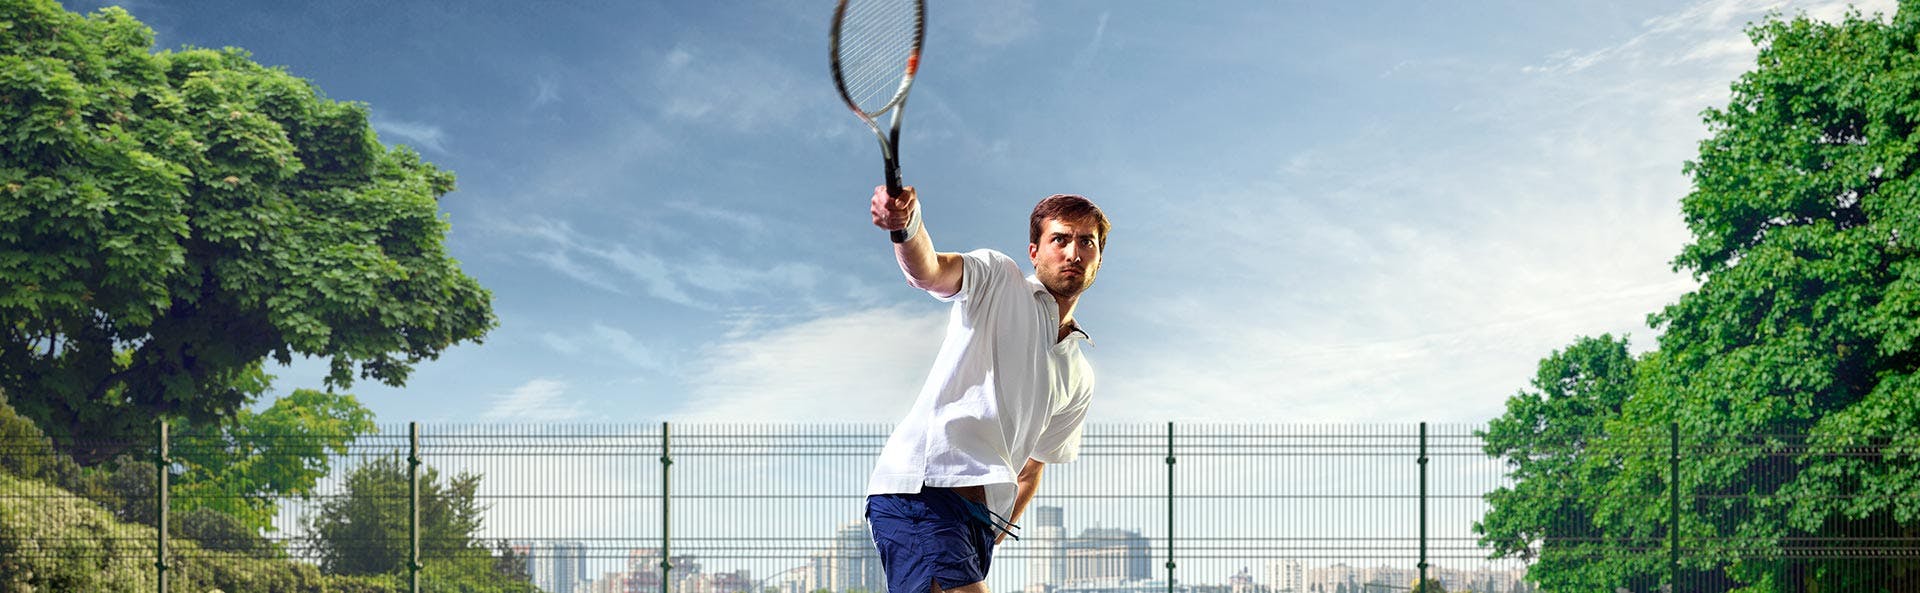 رجل يلعب رياضة كرة المضرب